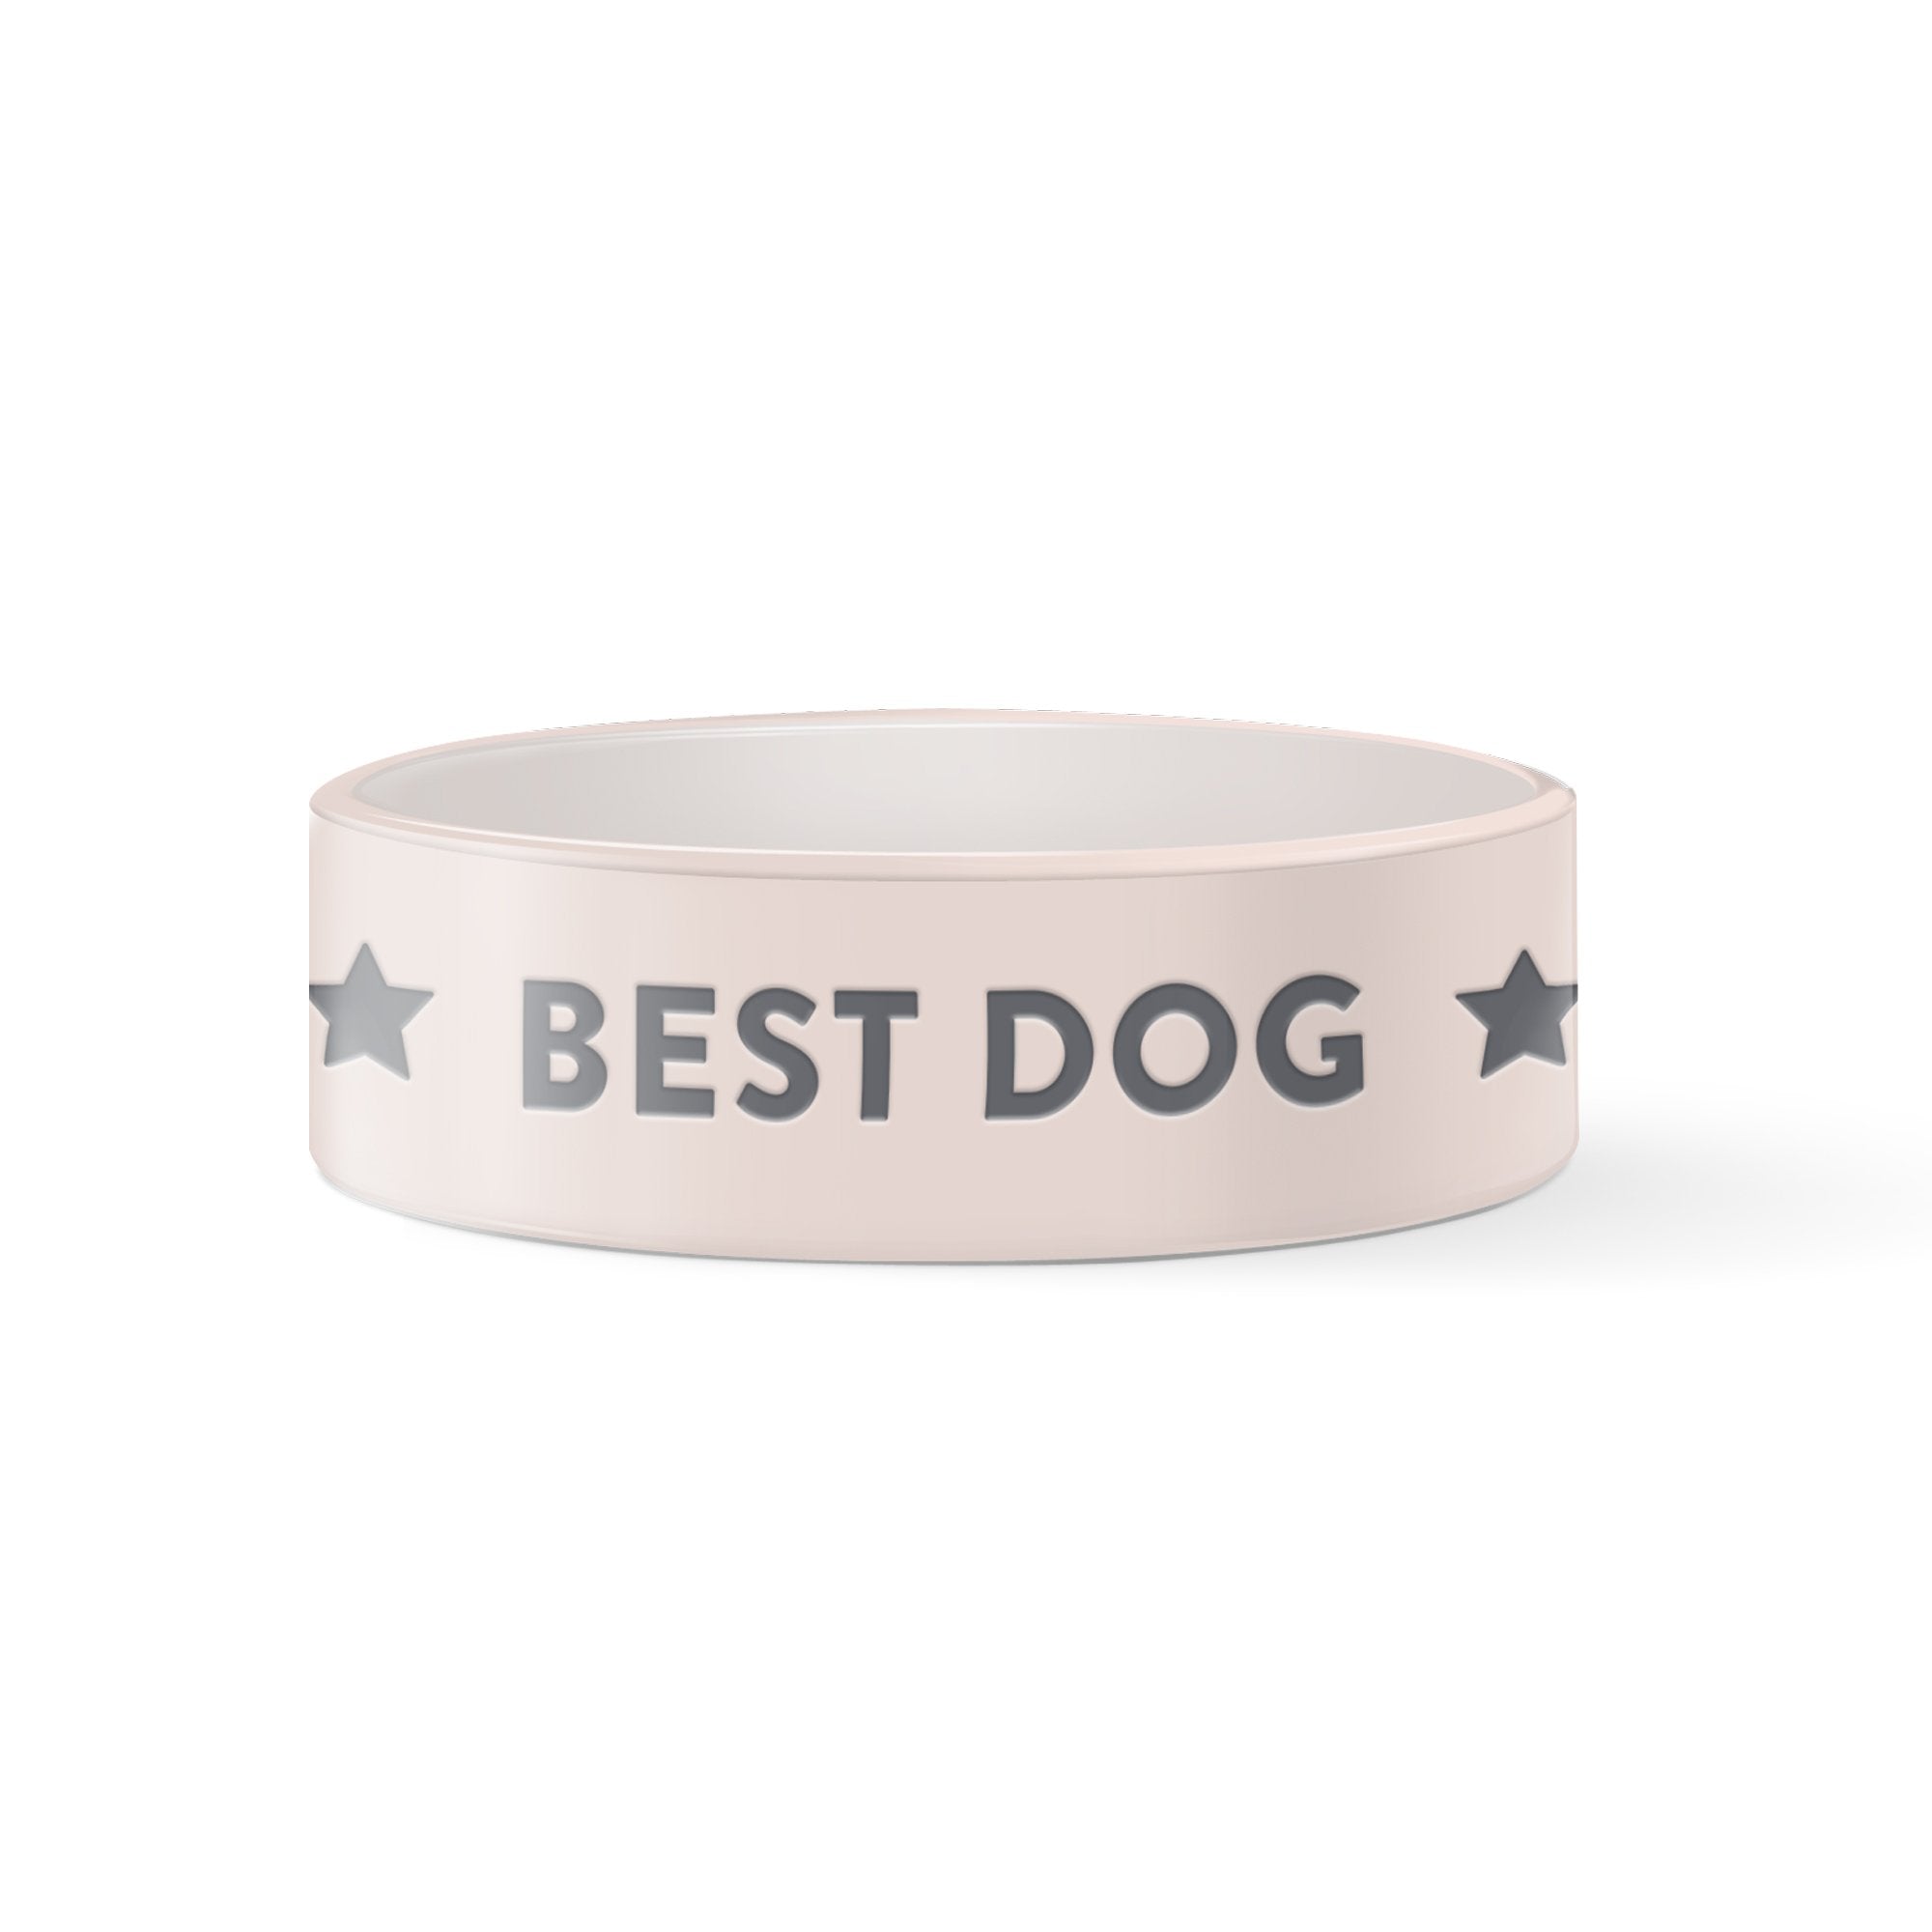 Best Dog Pet Bowl - Henlo Pets